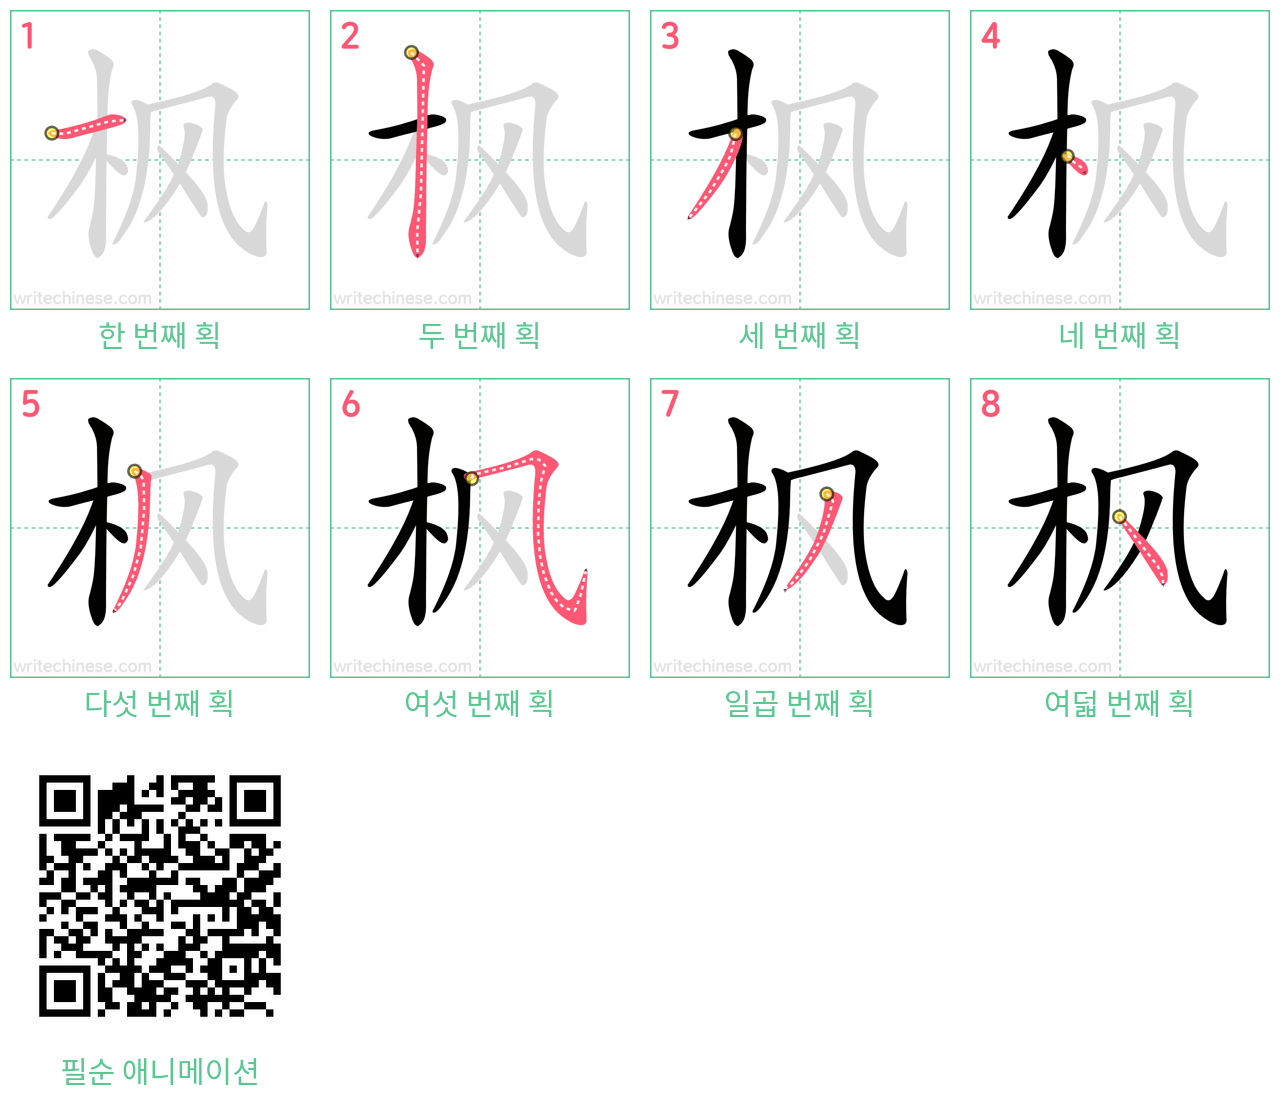 枫 step-by-step stroke order diagrams